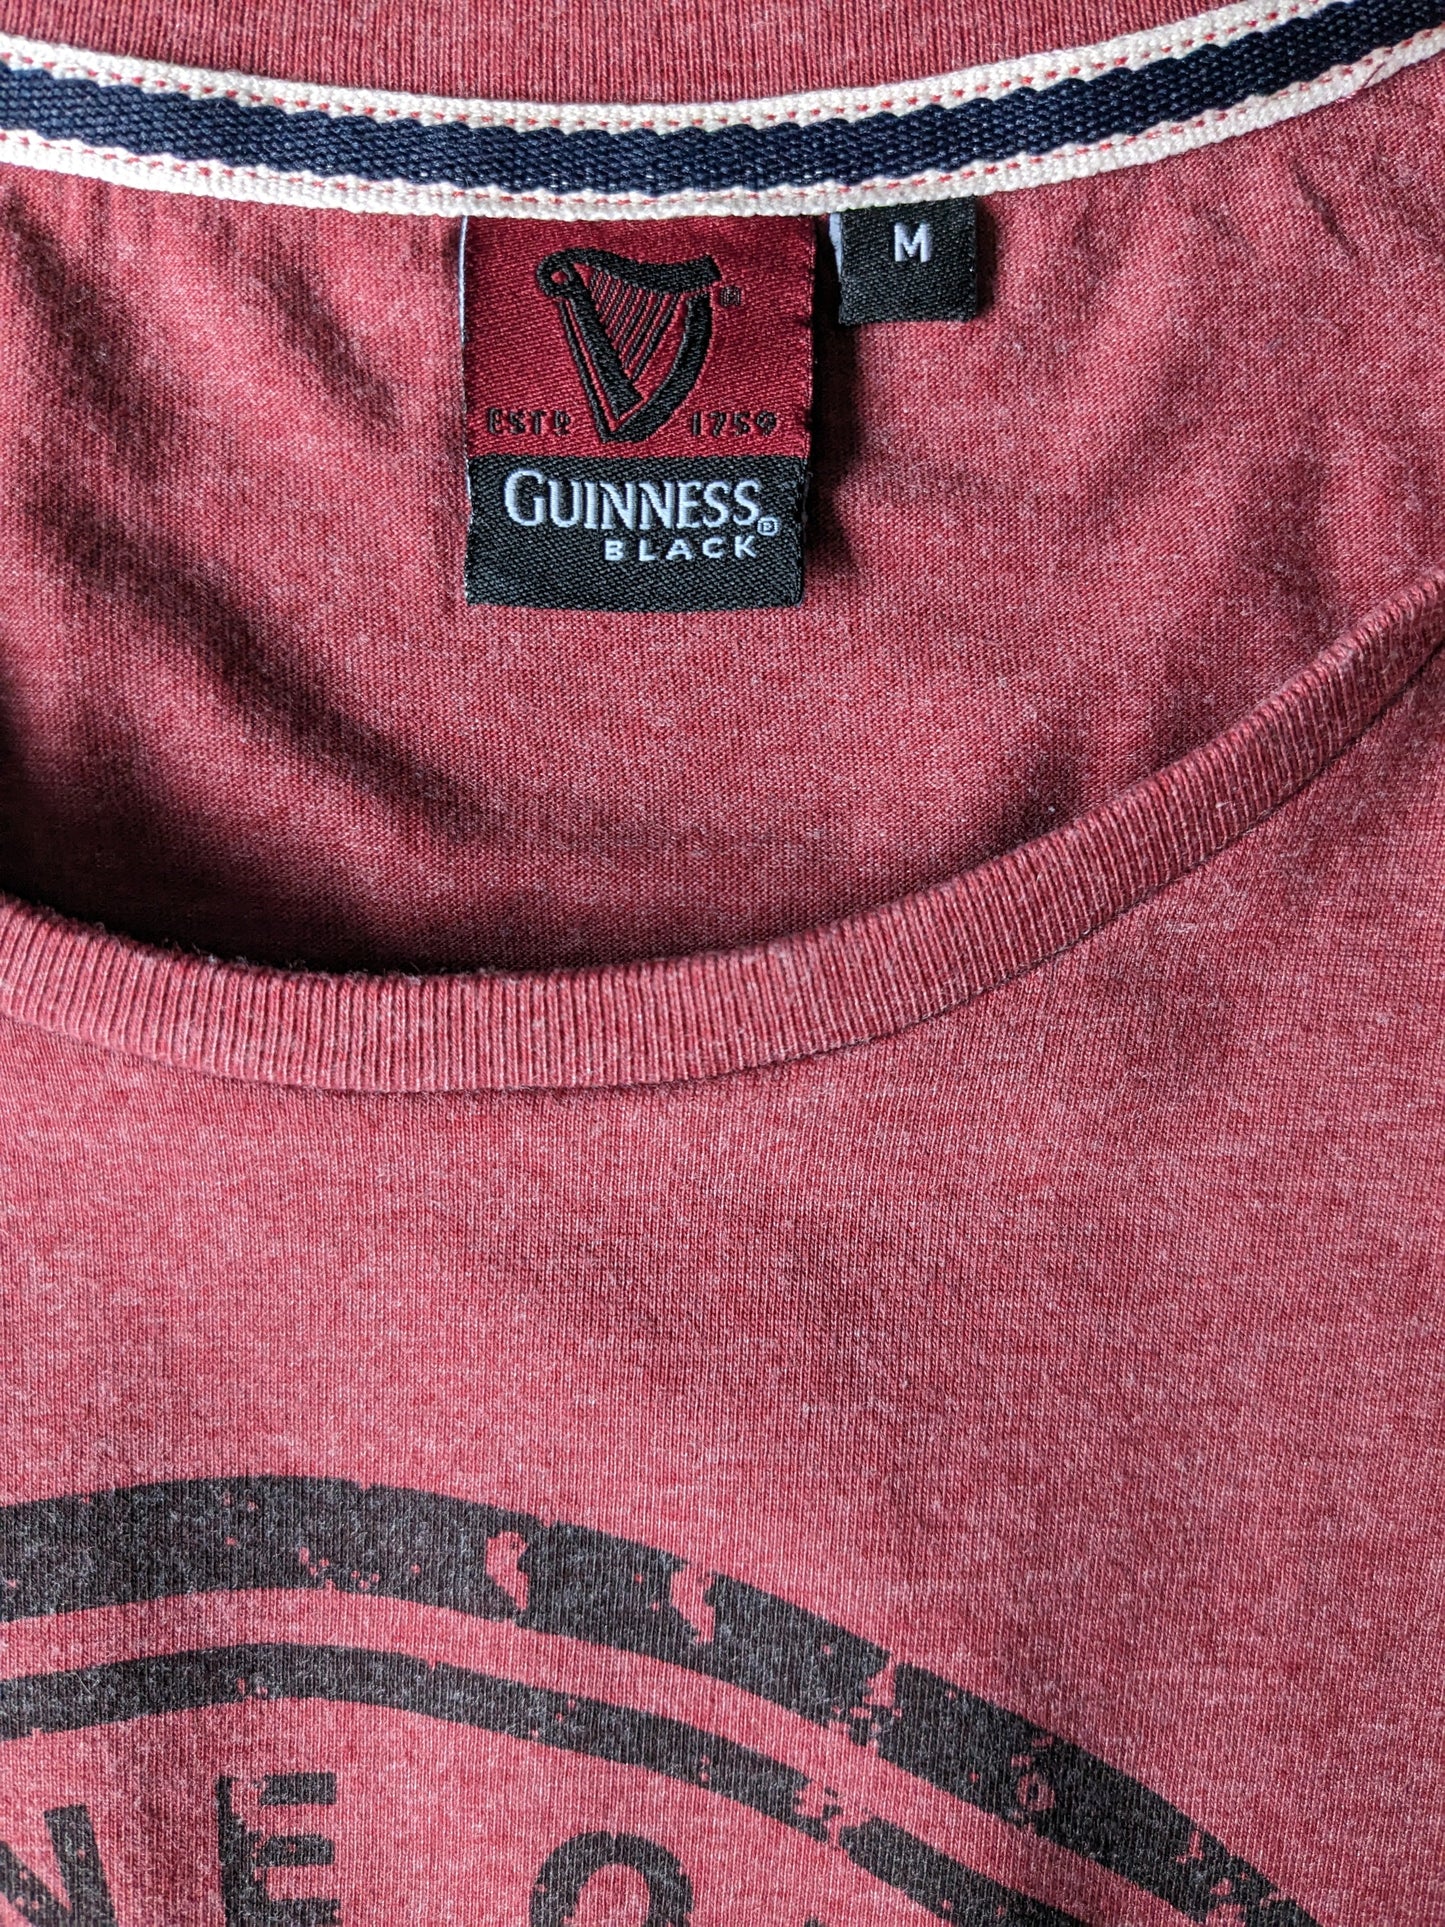 Camisa de Guinness. Rojo mezclado con impresión. Talla M.